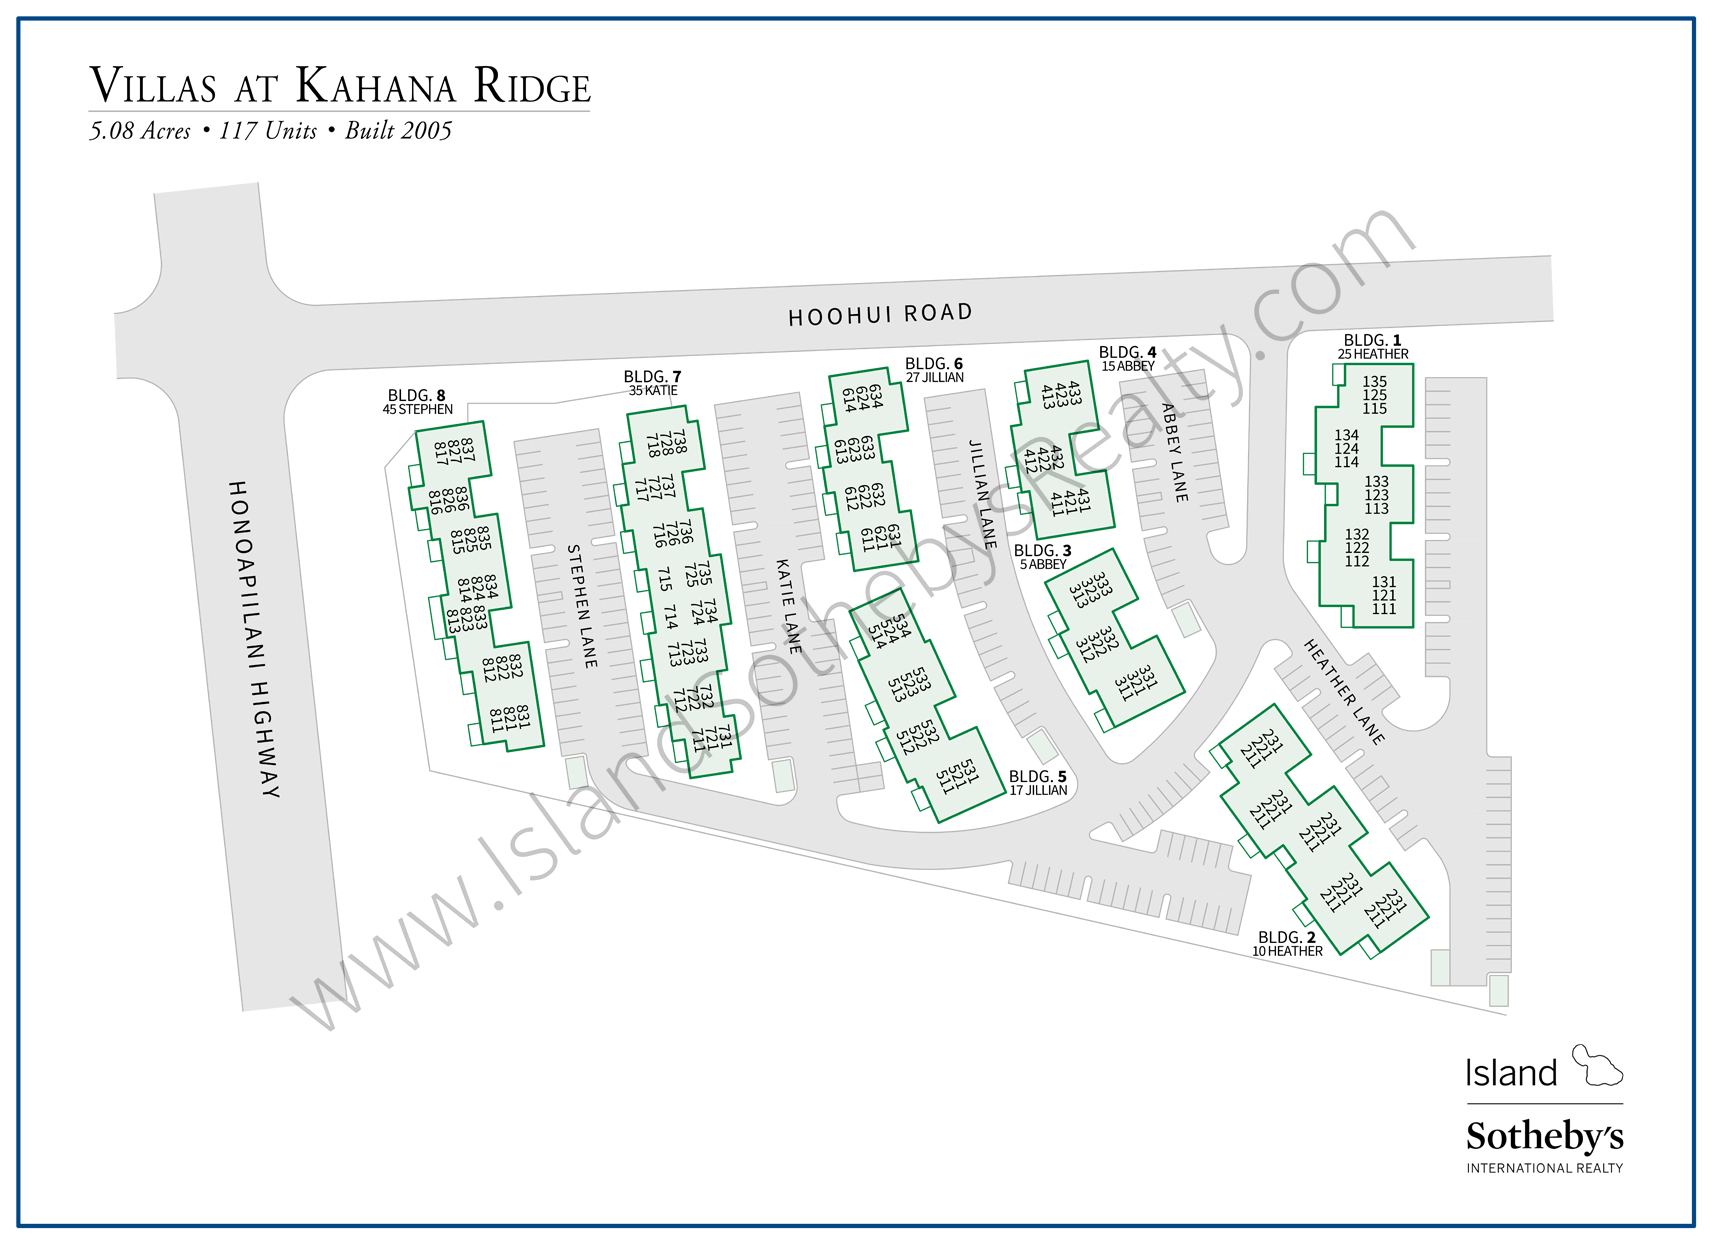 Map of Villas at Kahana Ridge